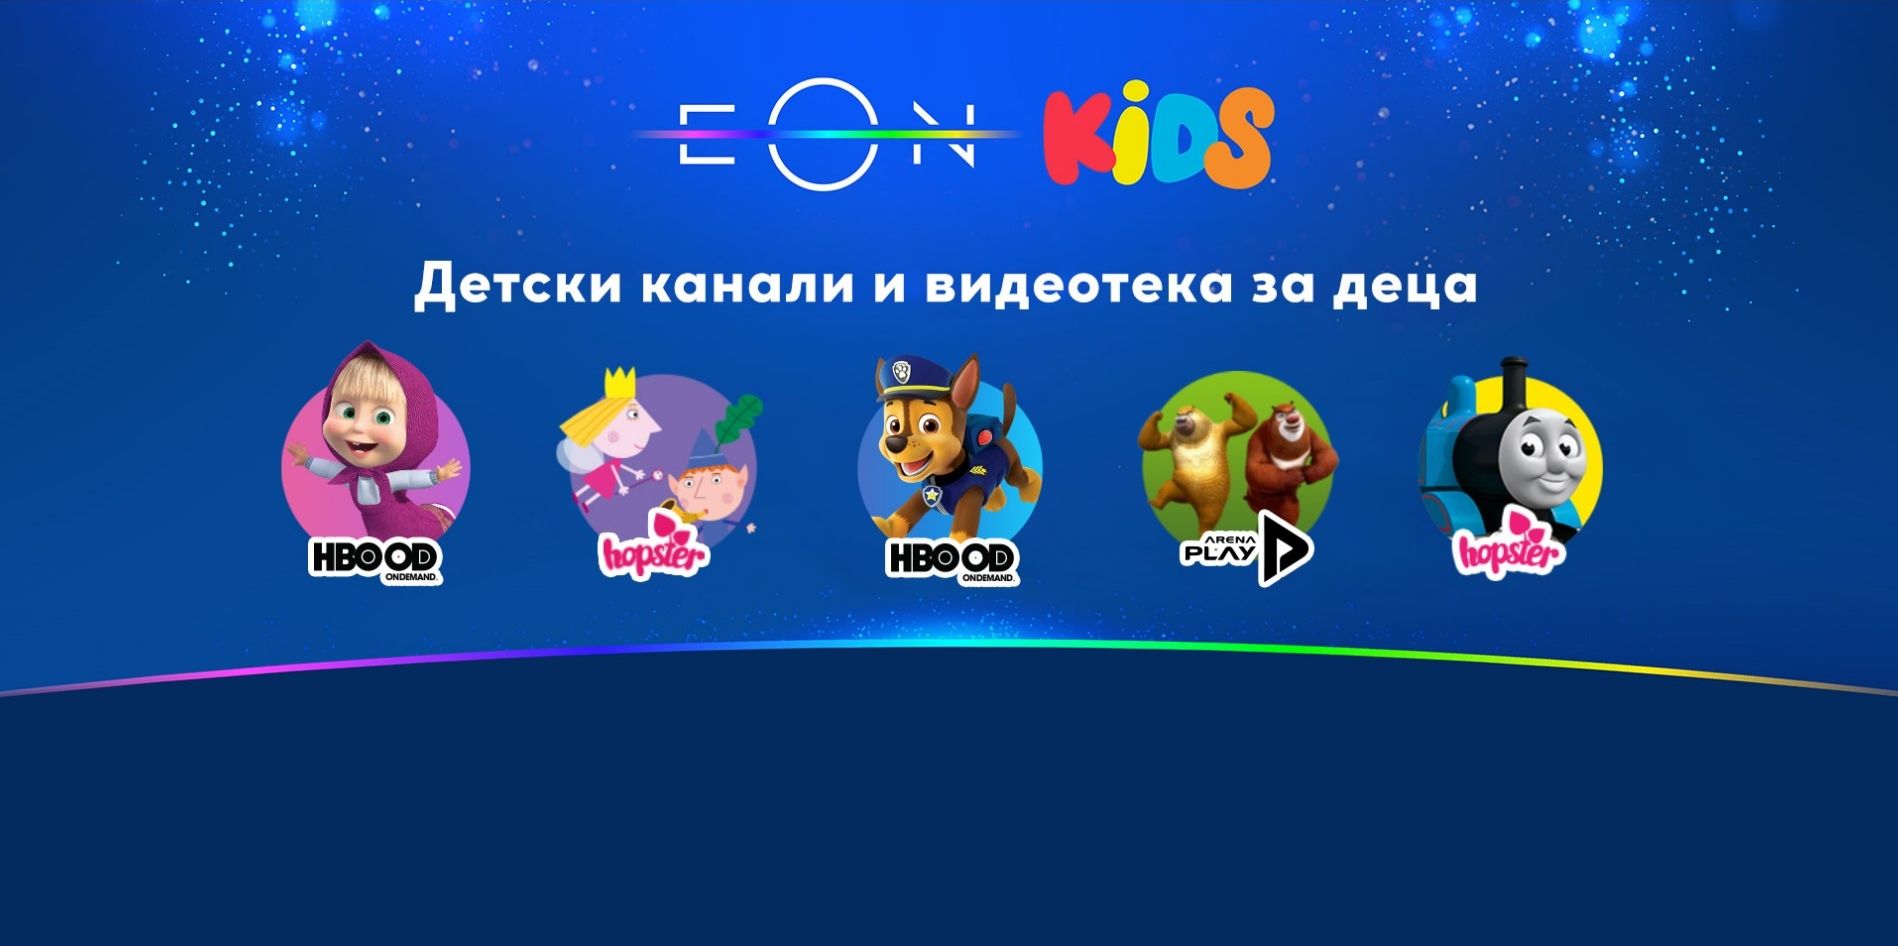 Част от детските канали на EON